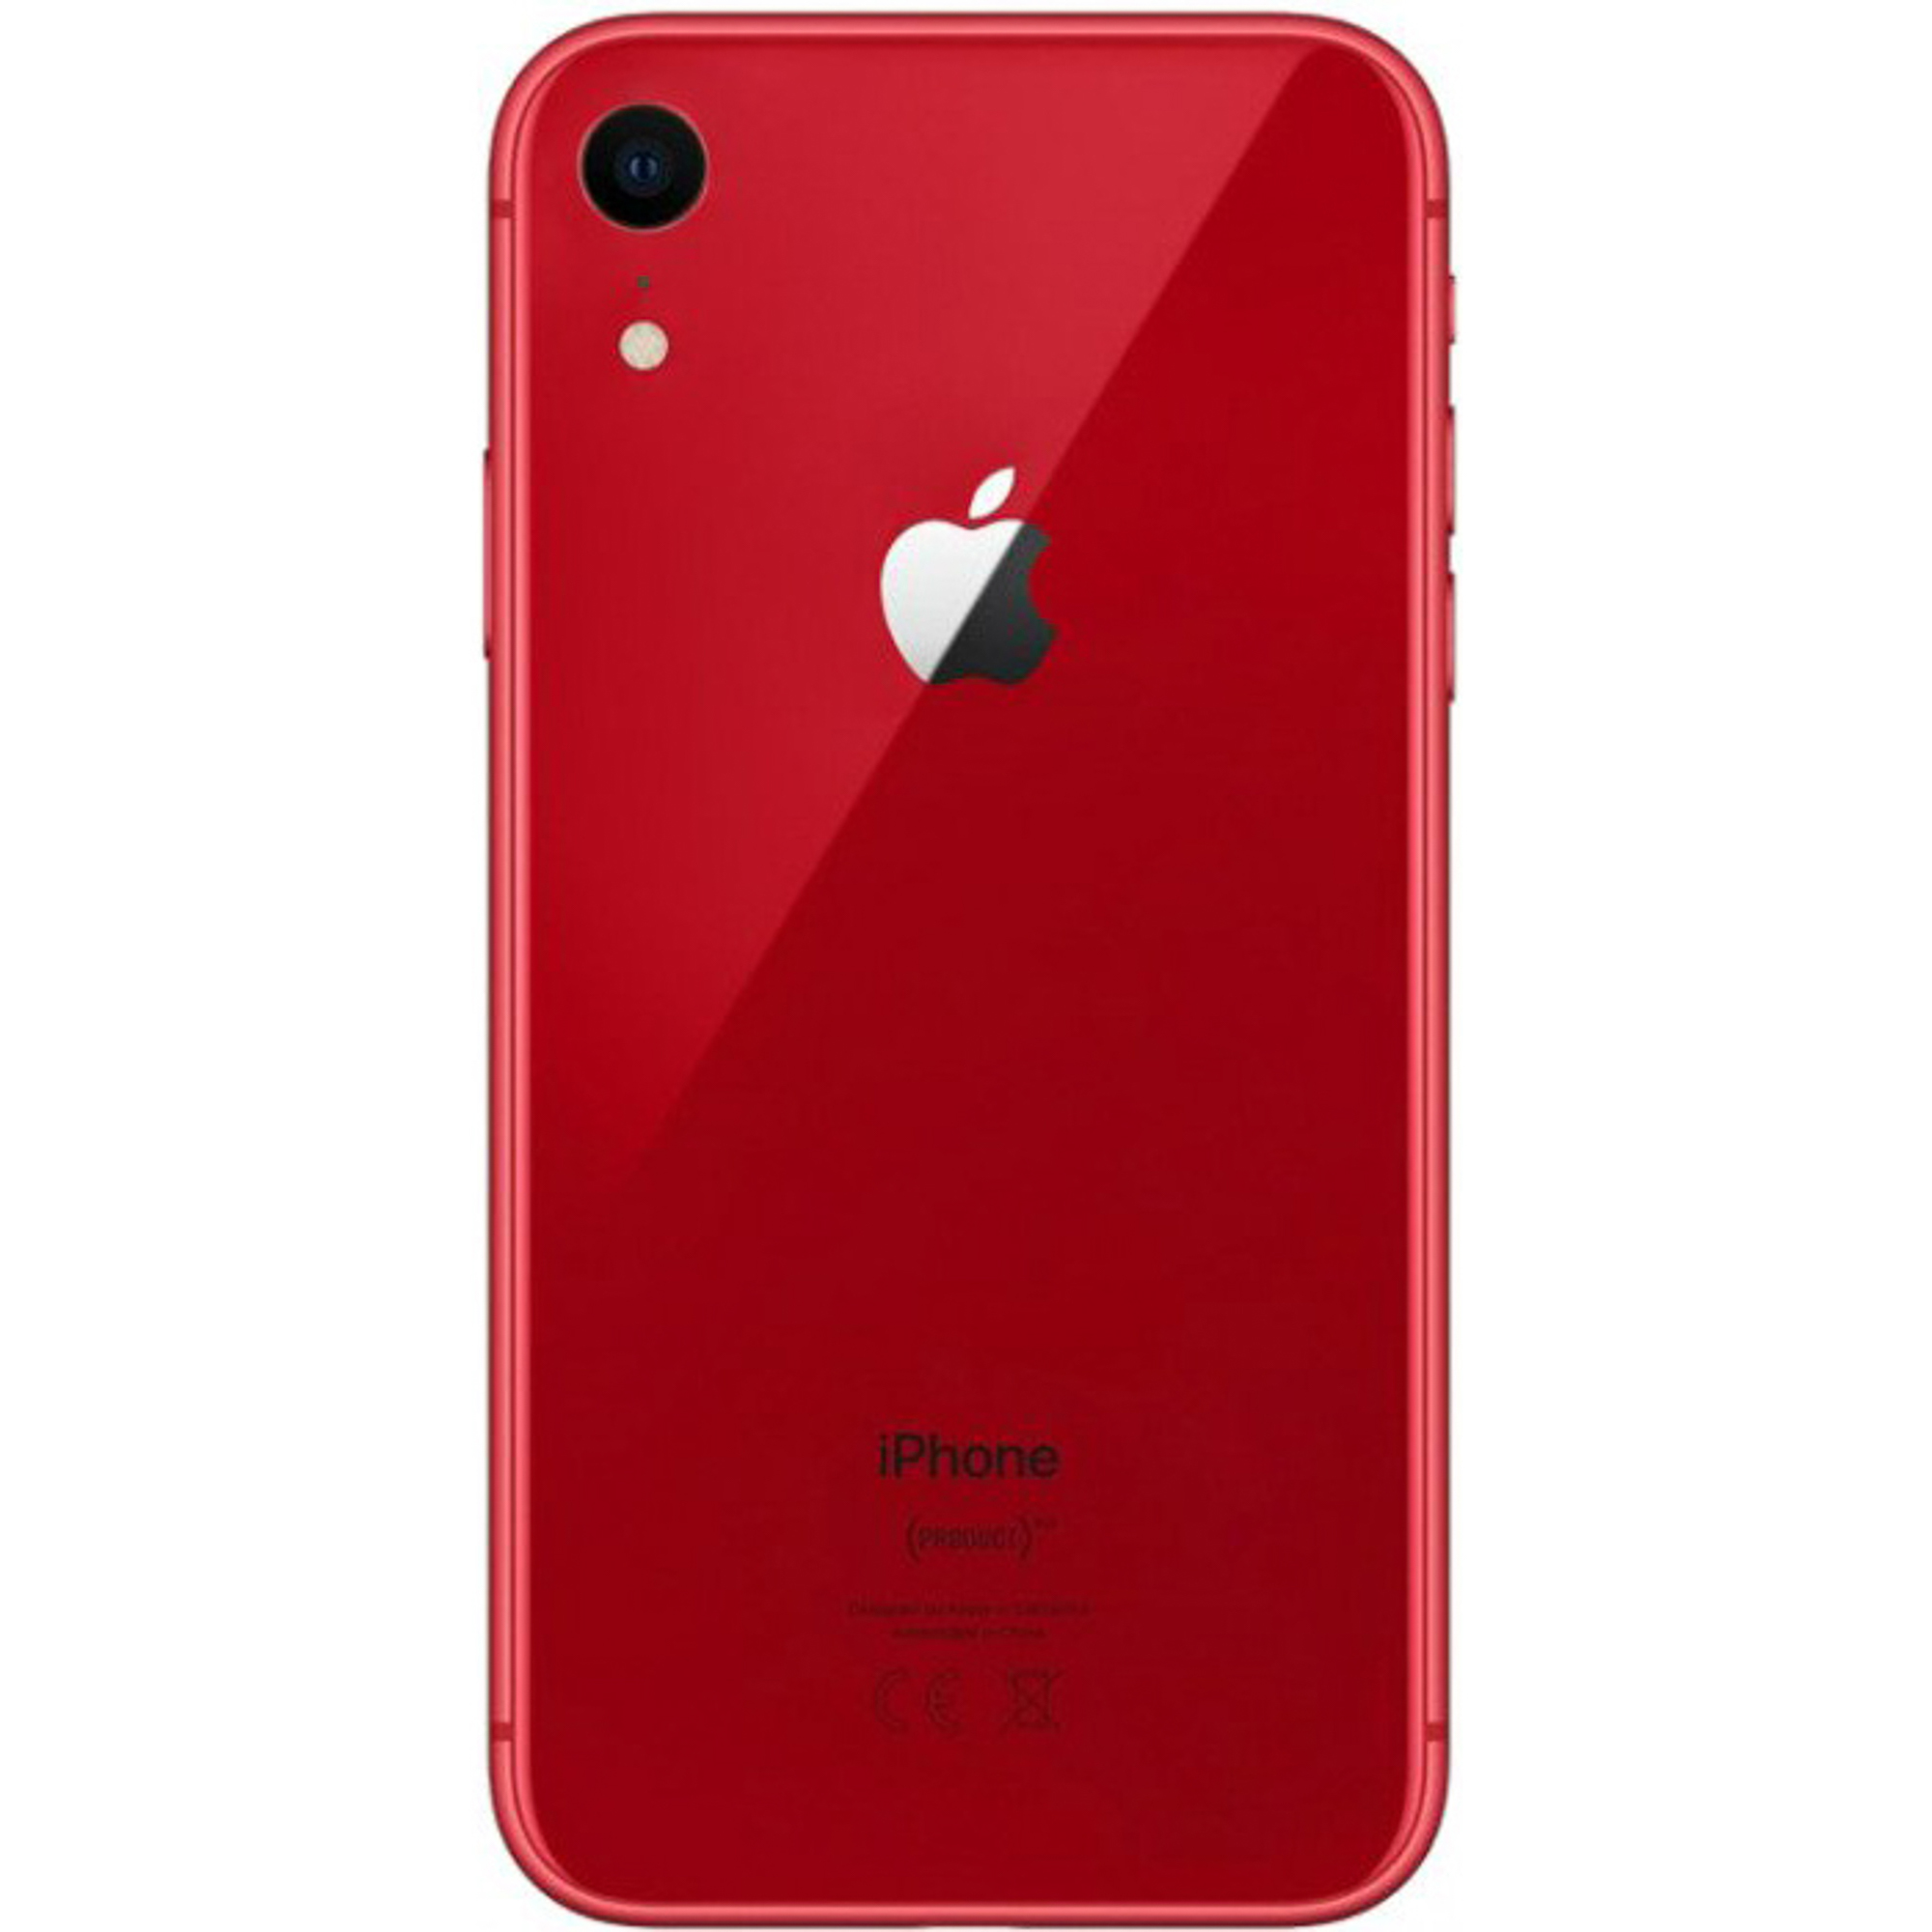 Смартфон Apple iPhone XR 64Gb Red, цвет красный MRY62RU/A A12 Bionic - фото 2